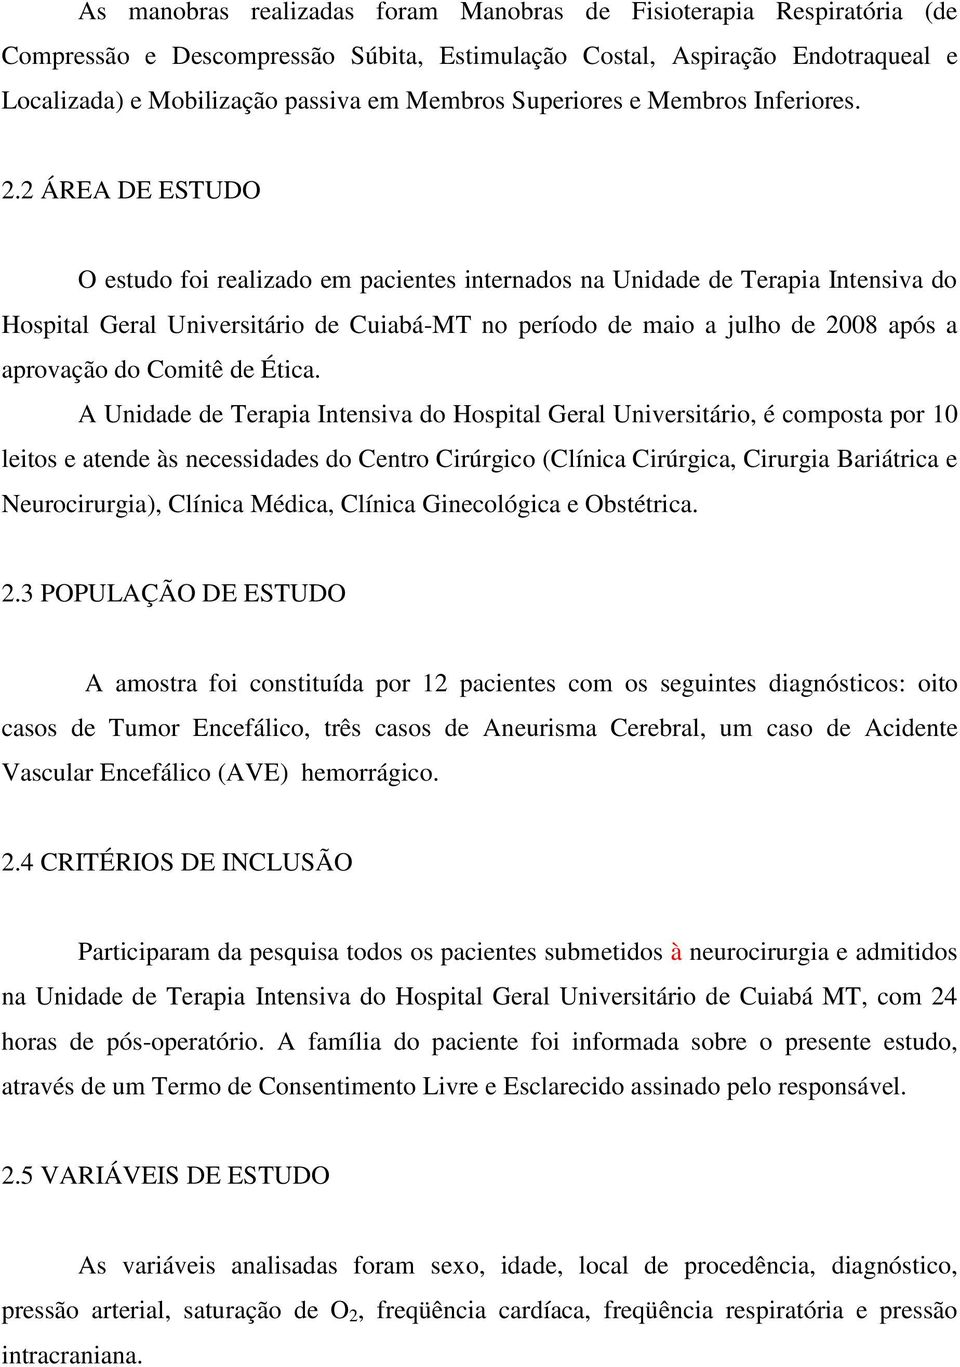 2 ÁREA DE ESTUDO O estudo foi realizado em pacientes internados na Unidade de Terapia Intensiva do Hospital Geral Universitário de Cuiabá-MT no período de maio a julho de 2008 após a aprovação do